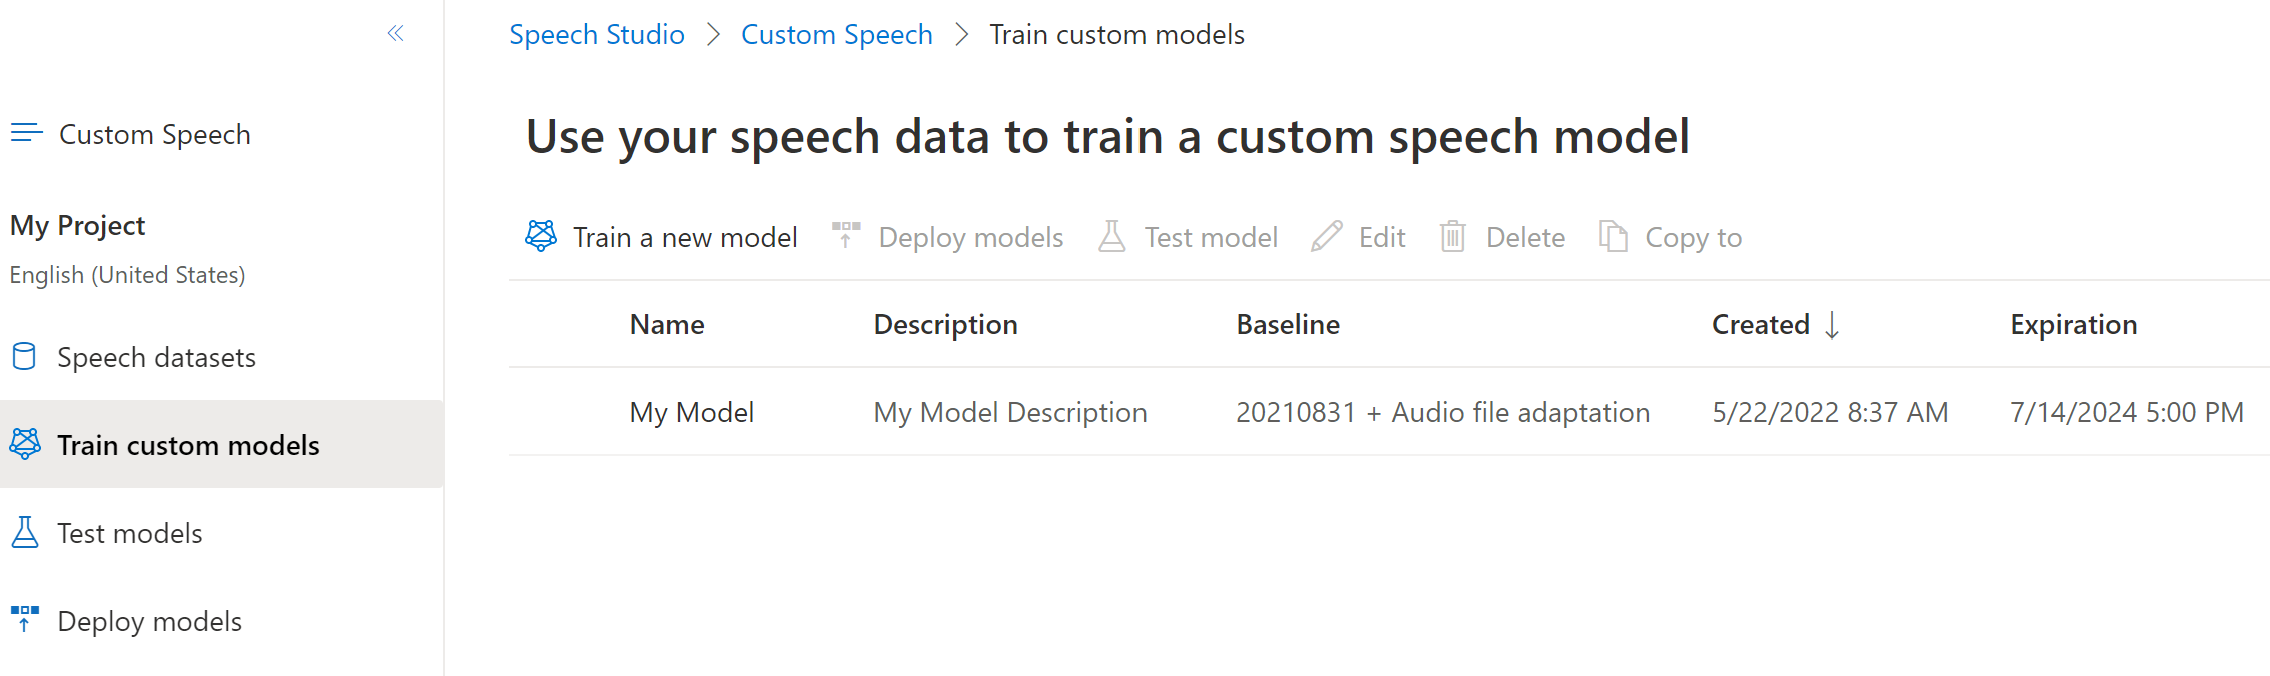 Captura de tela da página de treinamento de modelos personalizados que mostra a data de validade da transcrição.